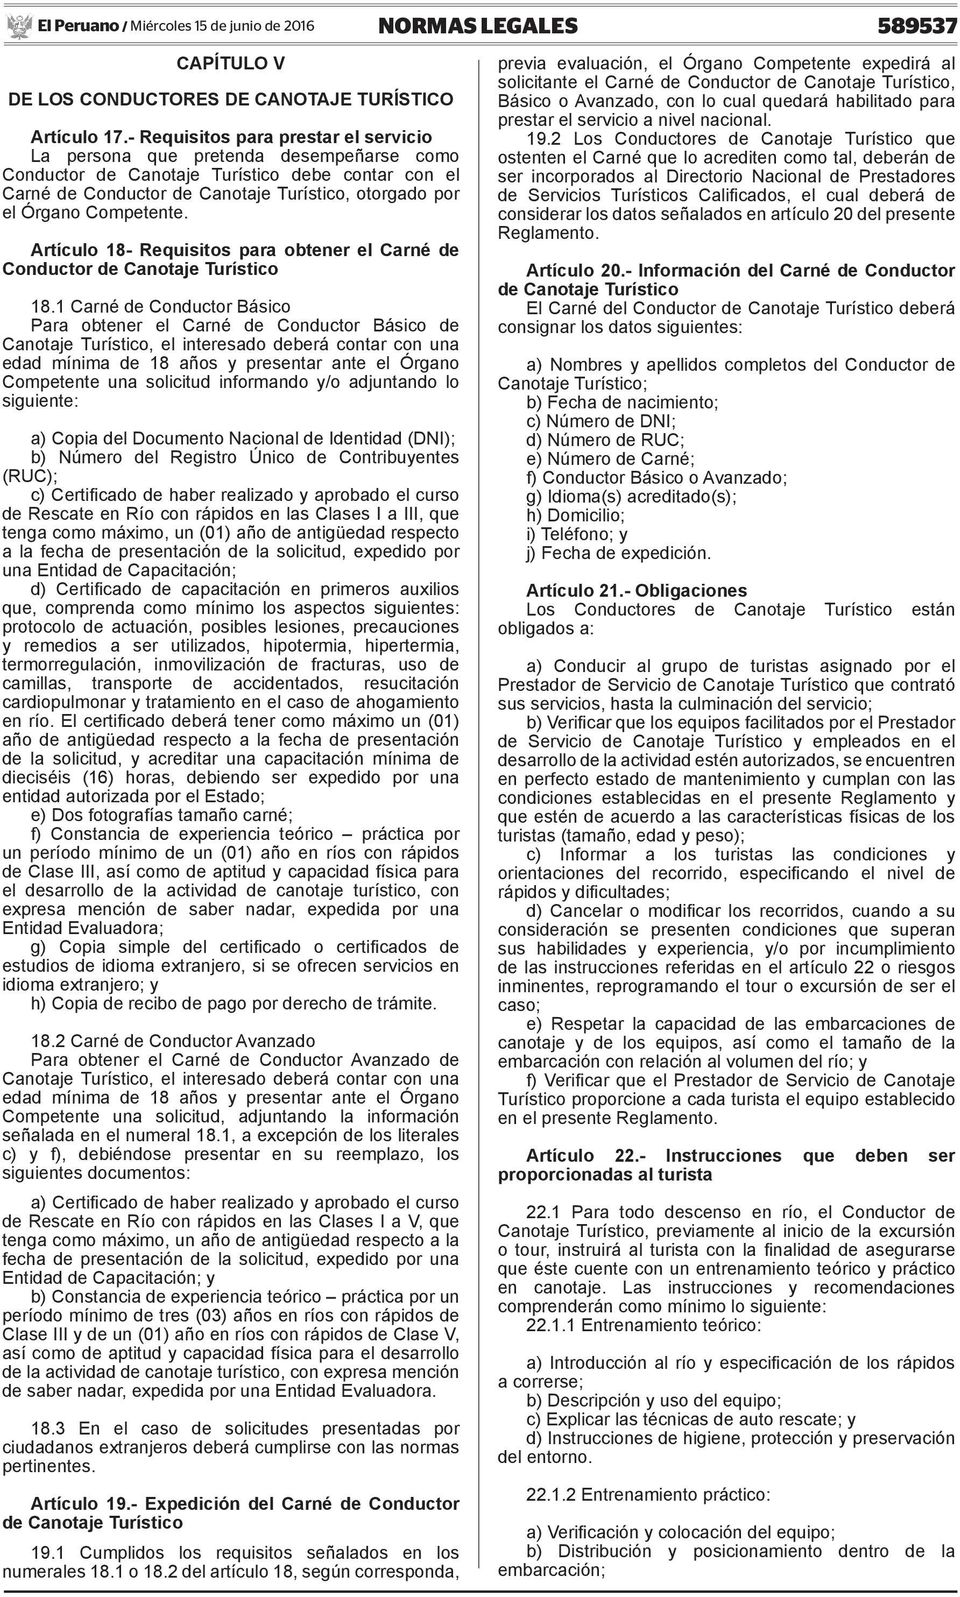 Competente. Artículo 18- Requisitos para obtener el Carné de Conductor de Canotaje Turístico 18.